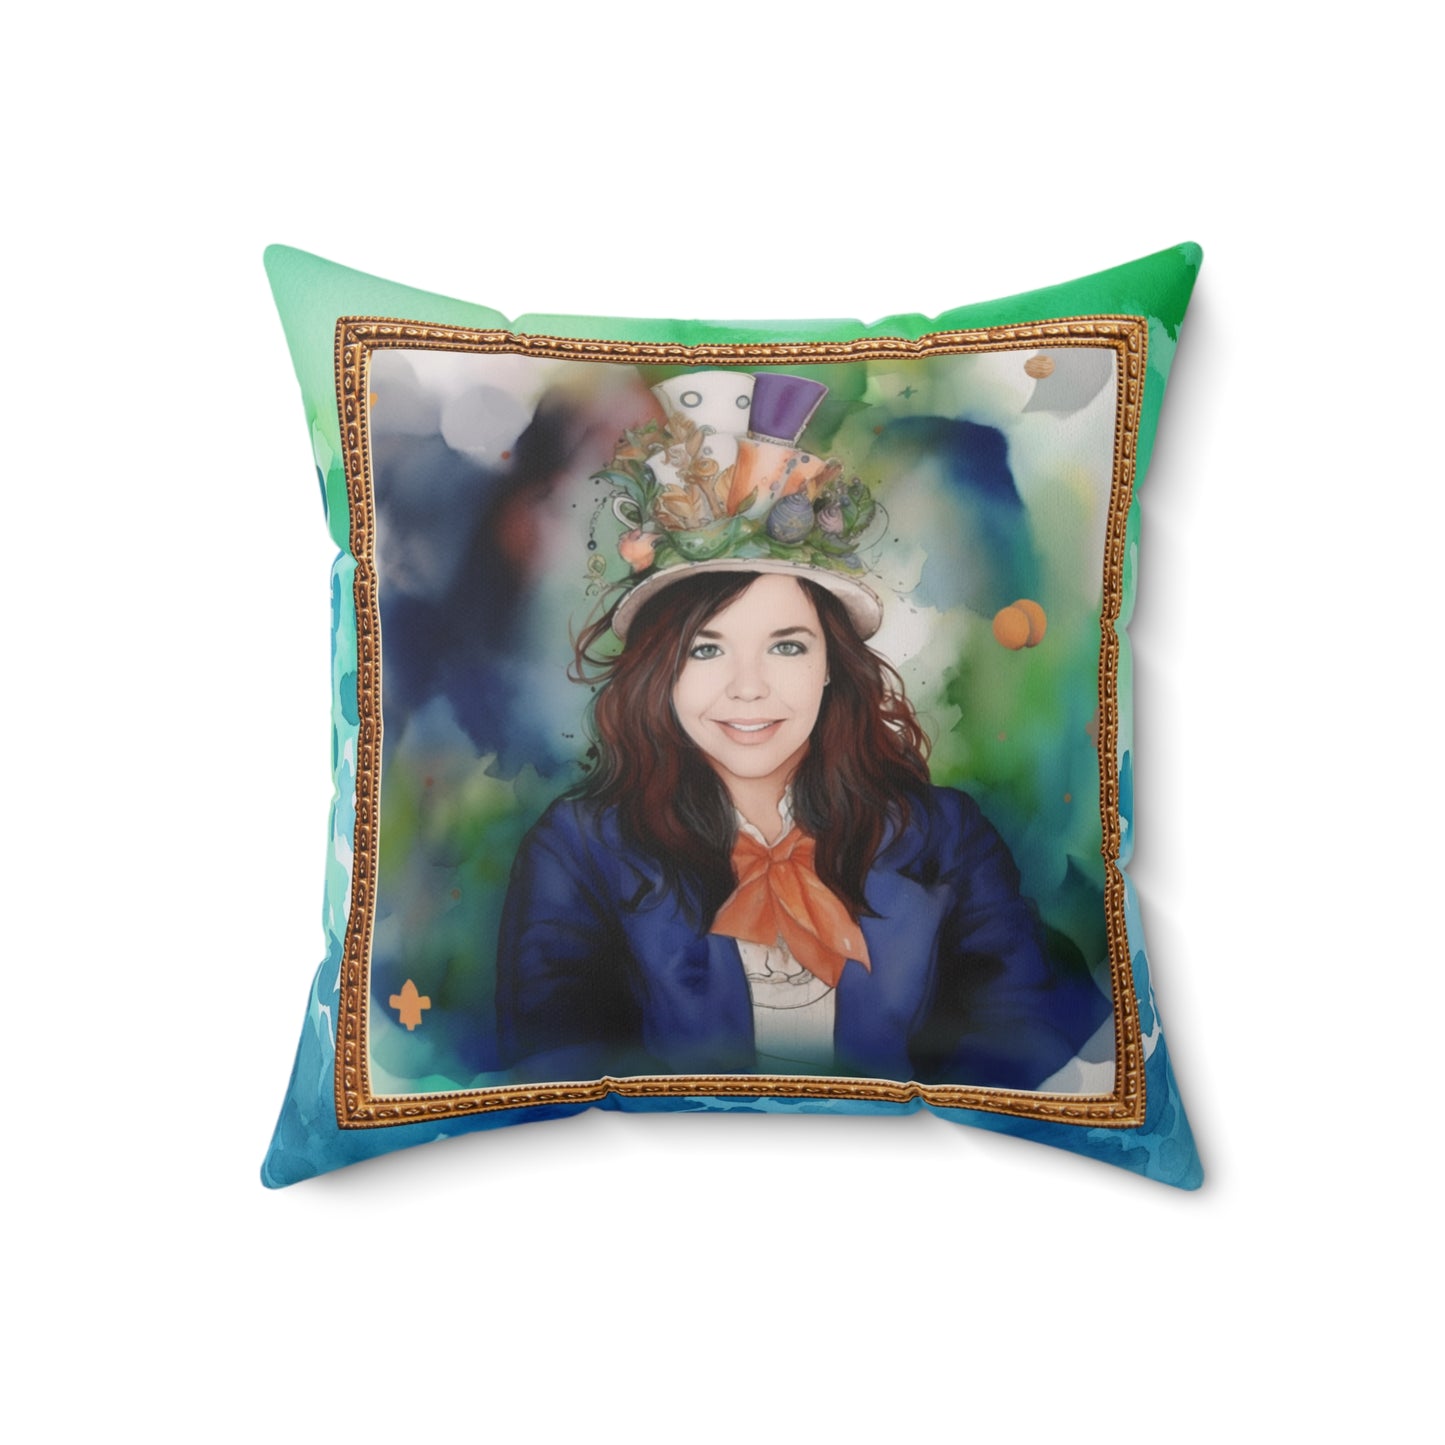 Ivana Matthew's Enchanted Pillow